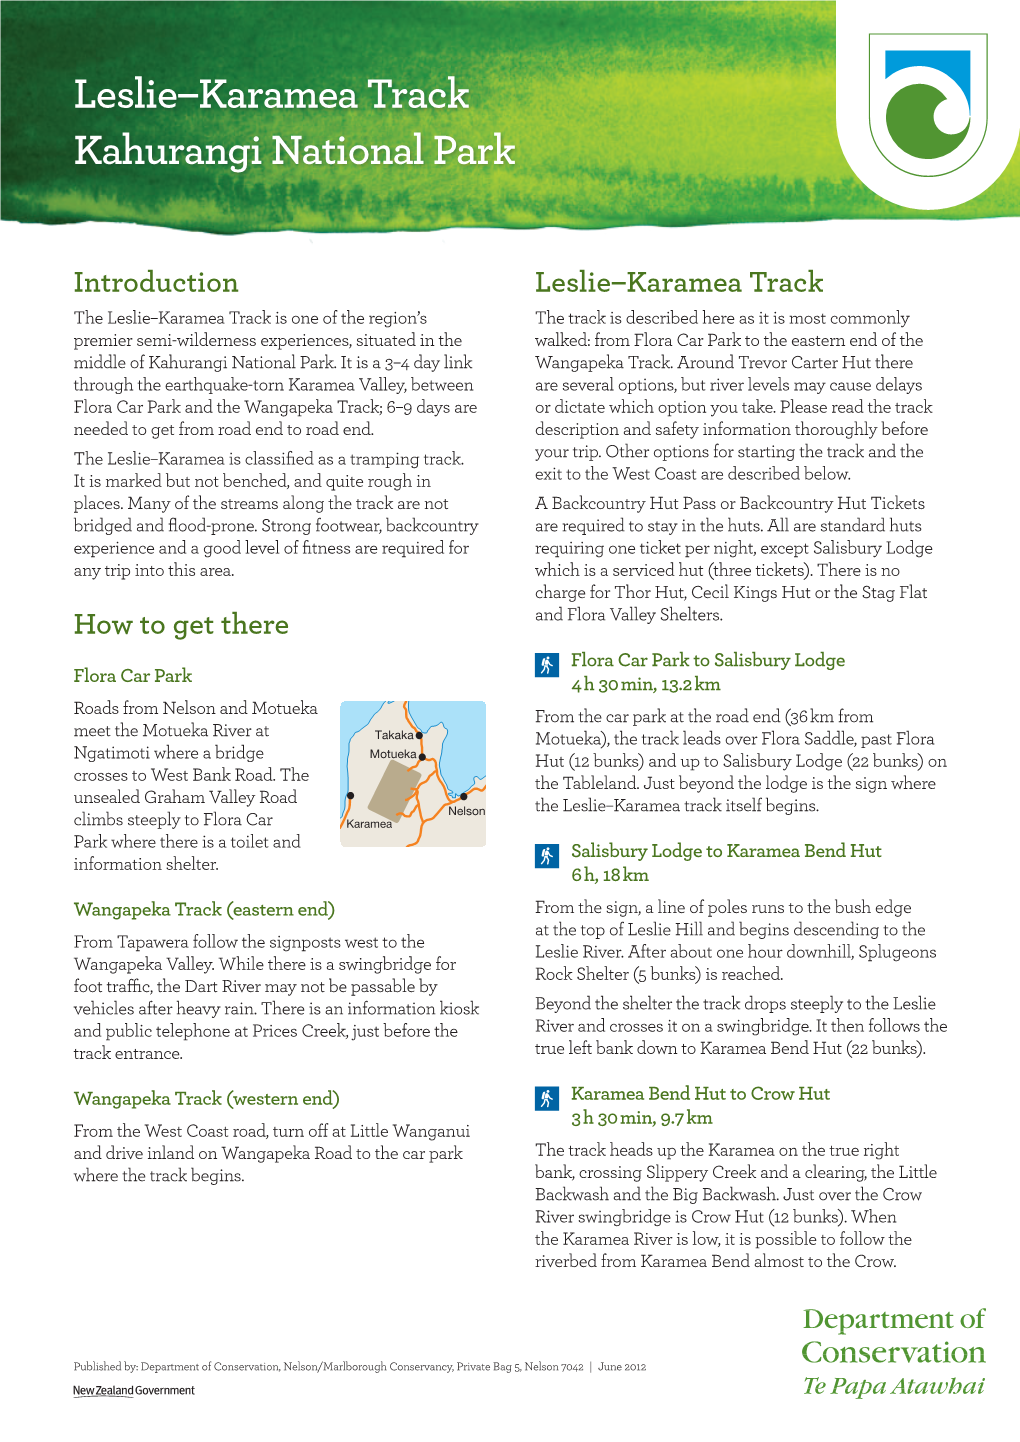 Leslie–Karamea Track Brochure